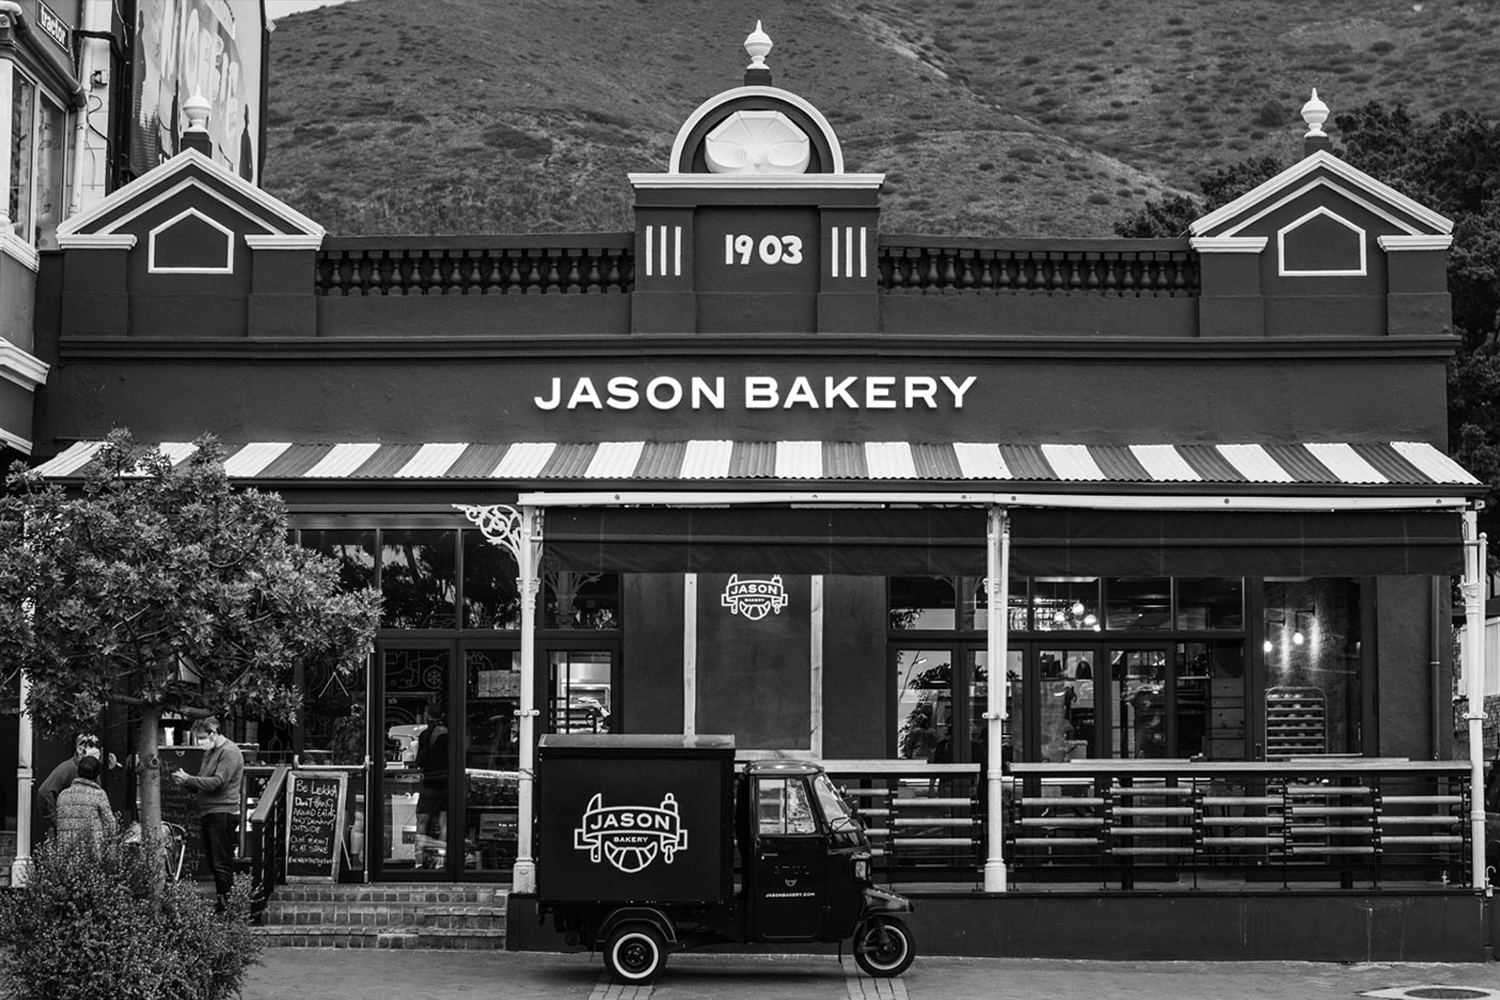 Jason Bakery